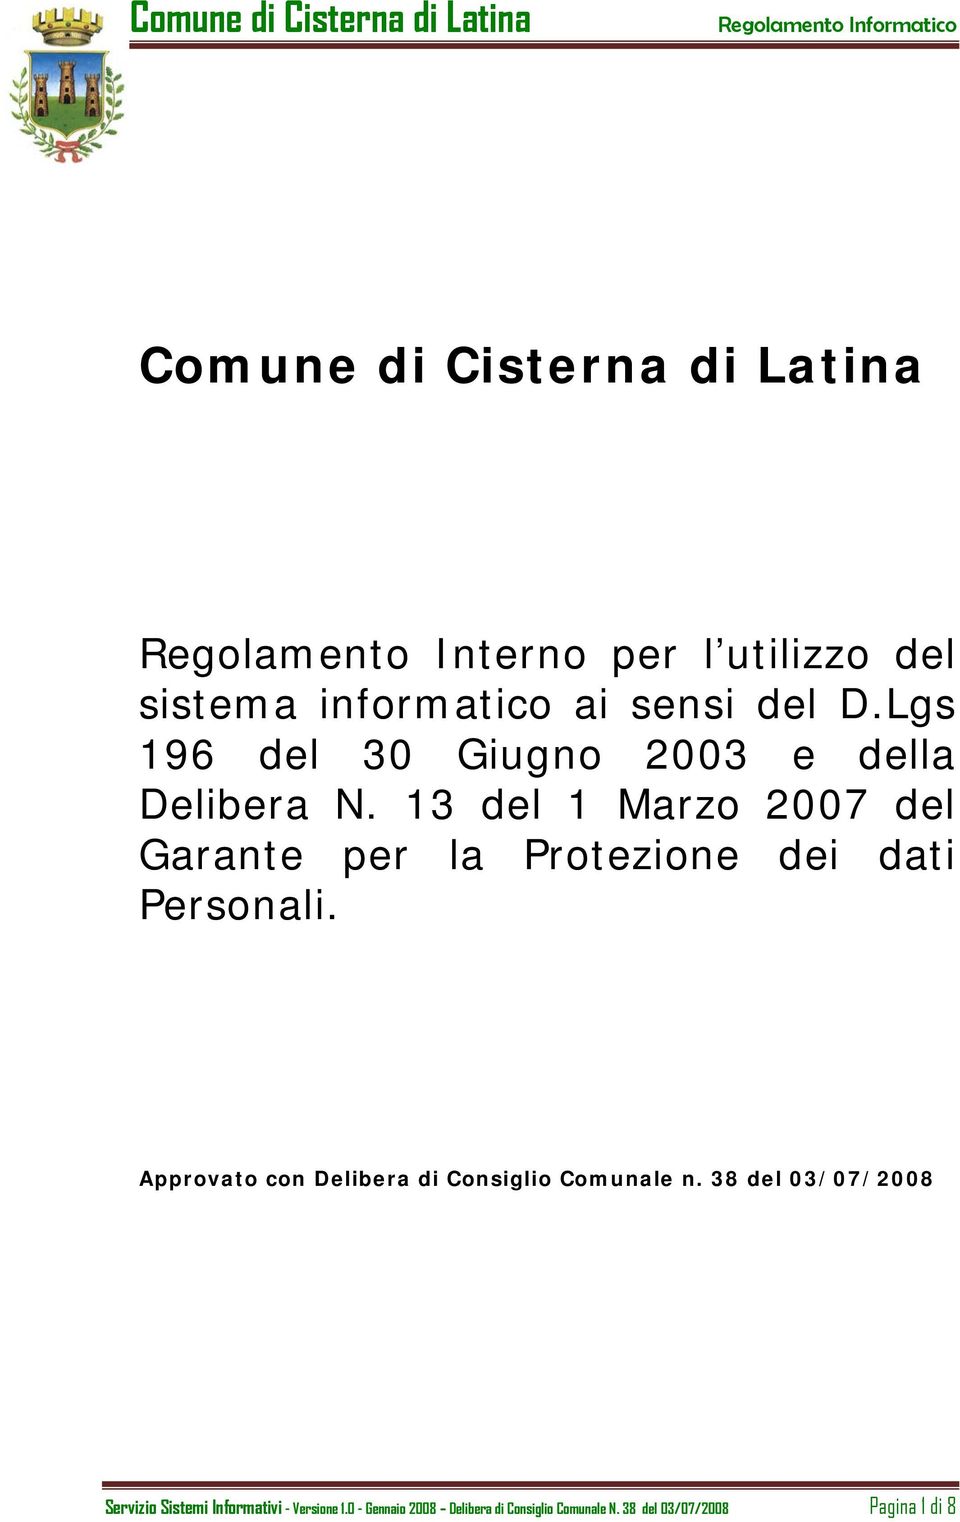 13 del 1 Marzo 2007 del Garante per la Protezione dei dati Personali.